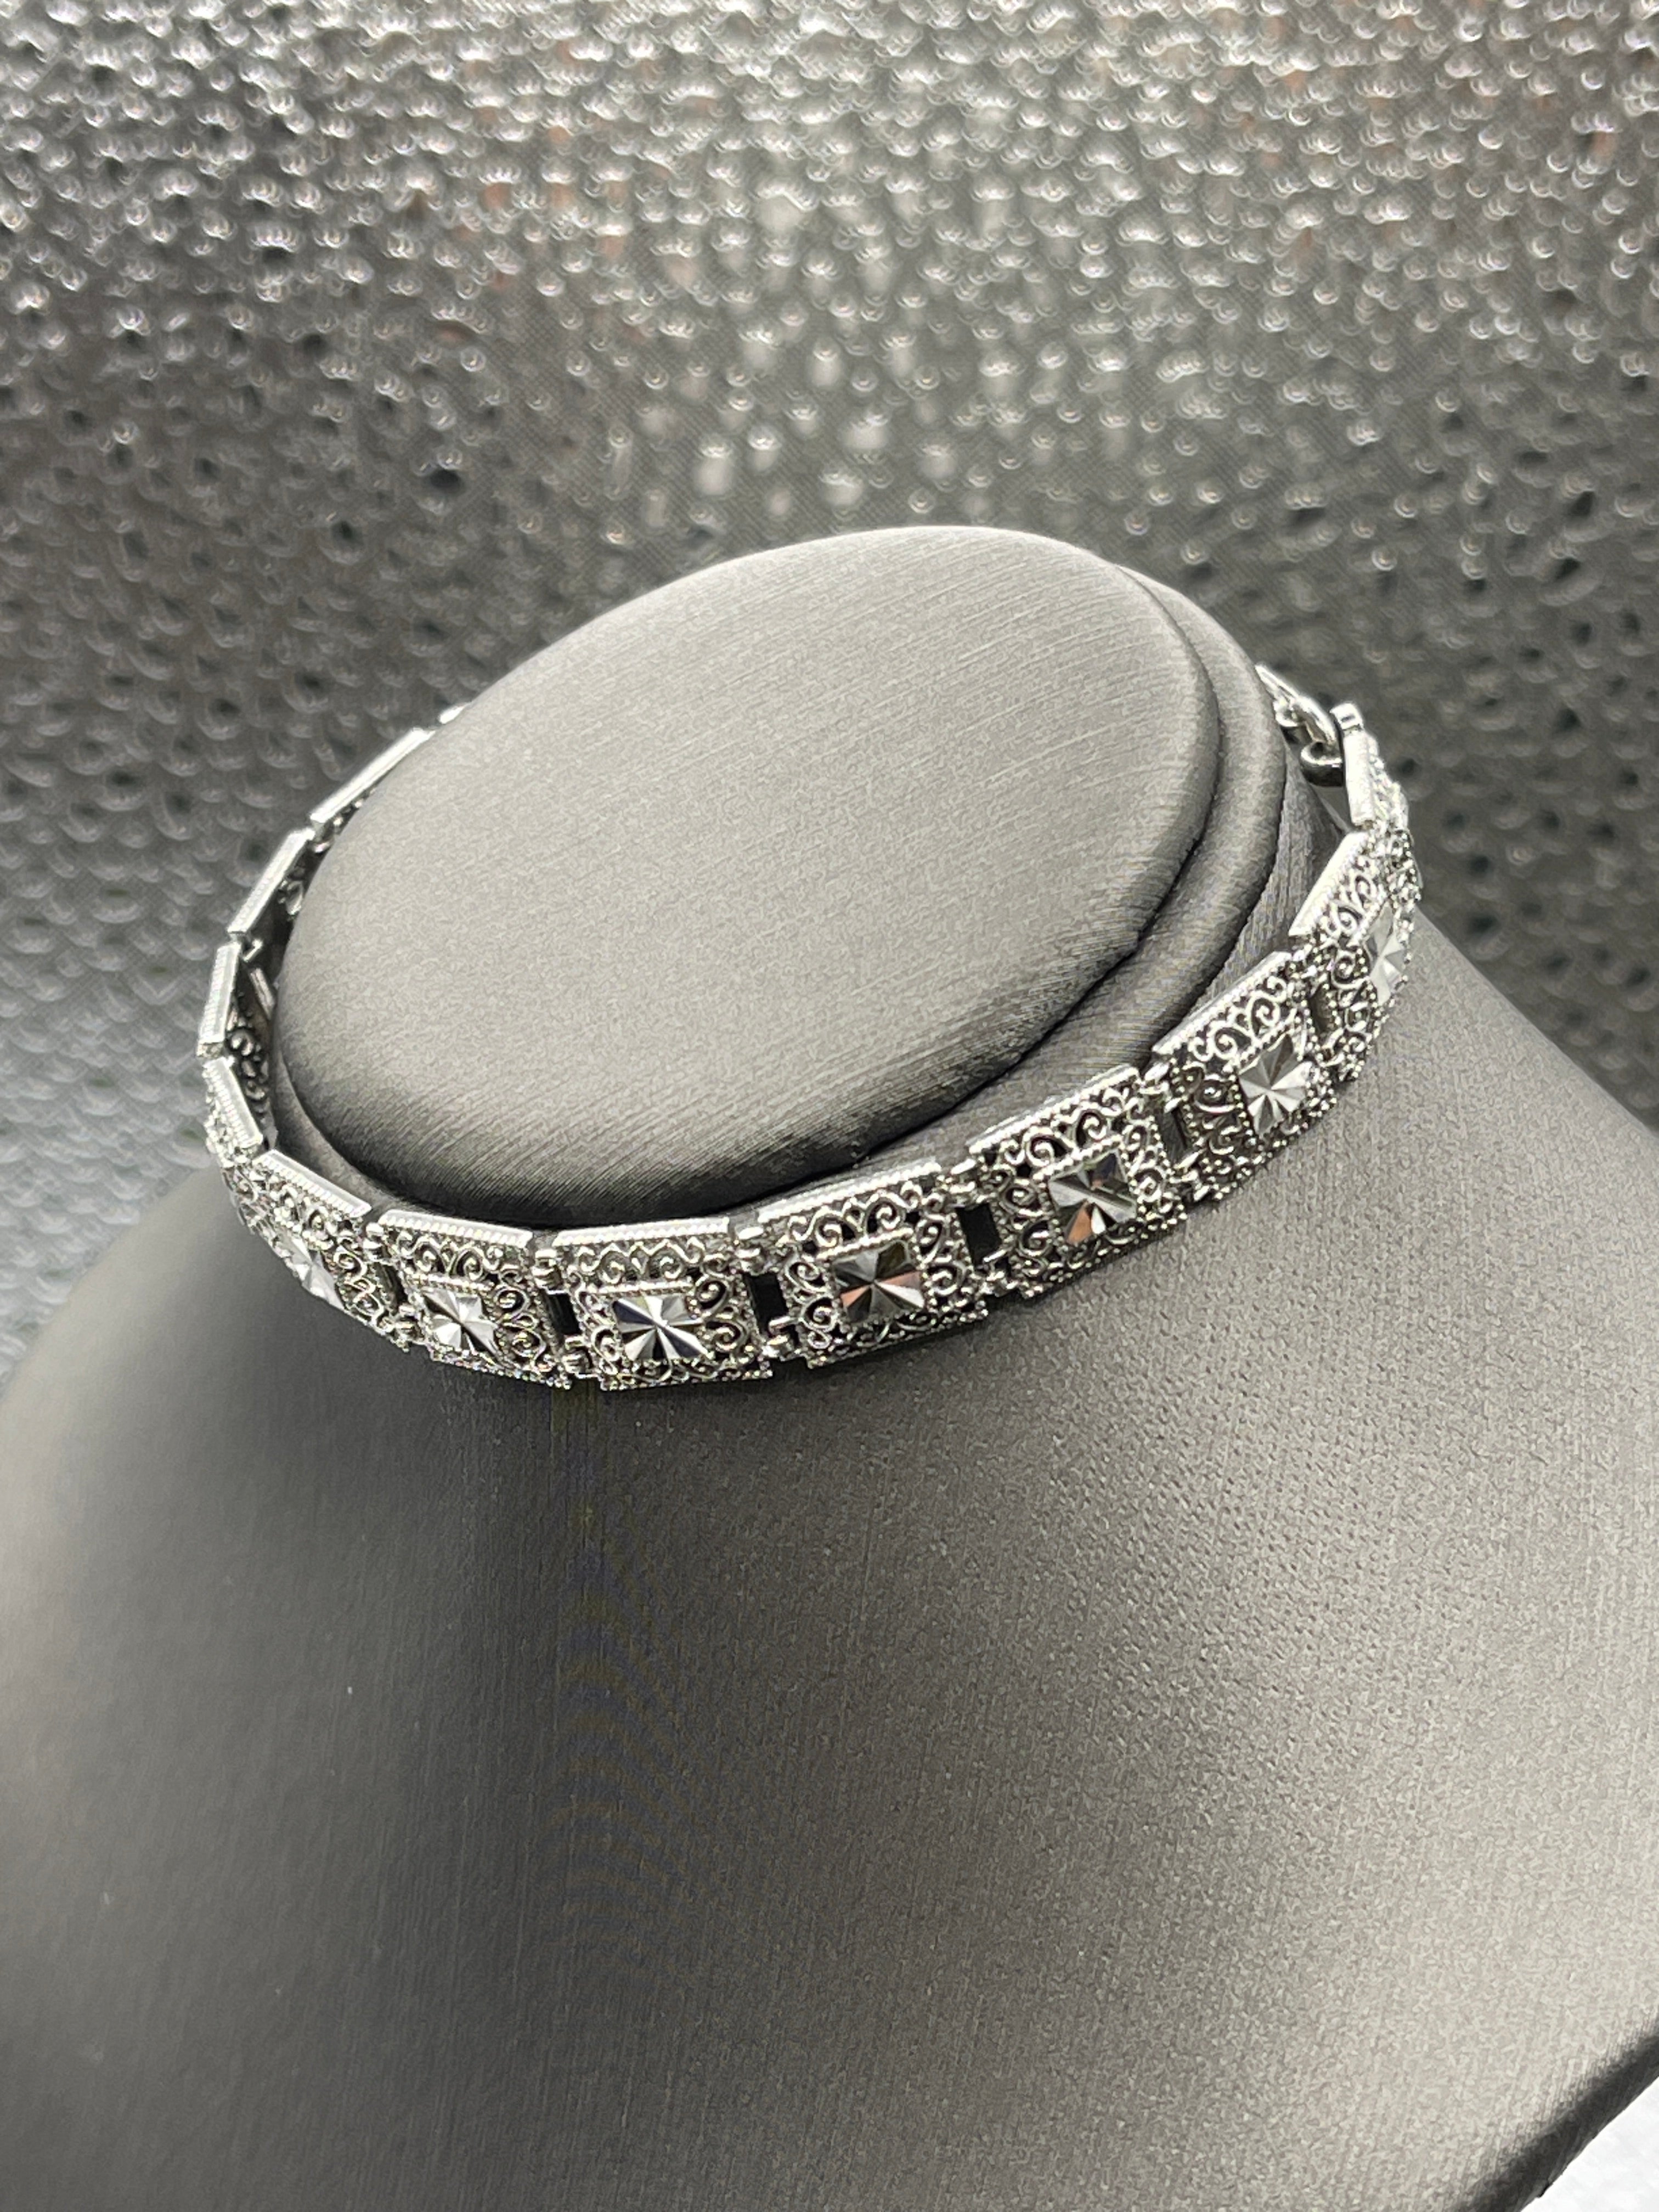 Rose Bracelet: Silver Elegance with Timeless Flower Design – BellaJewels